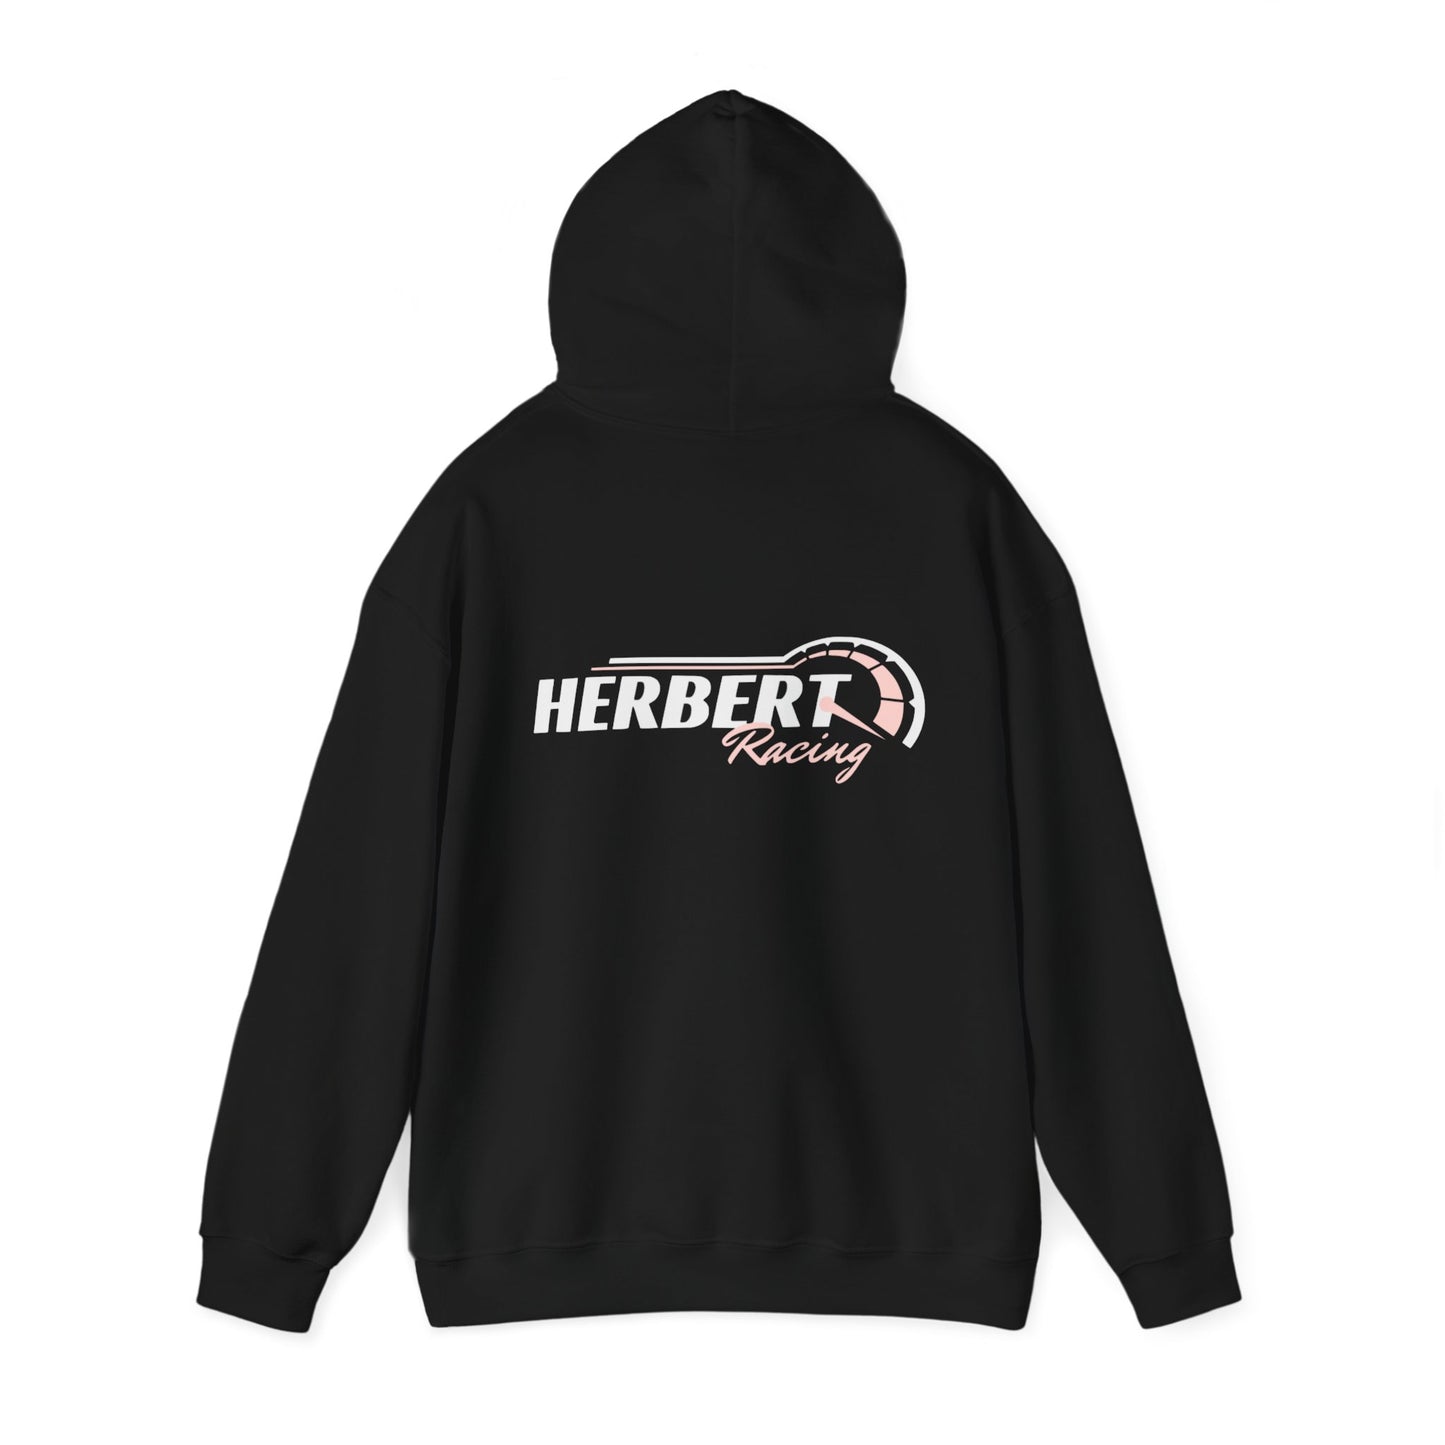 Herbert Racing Hoodie